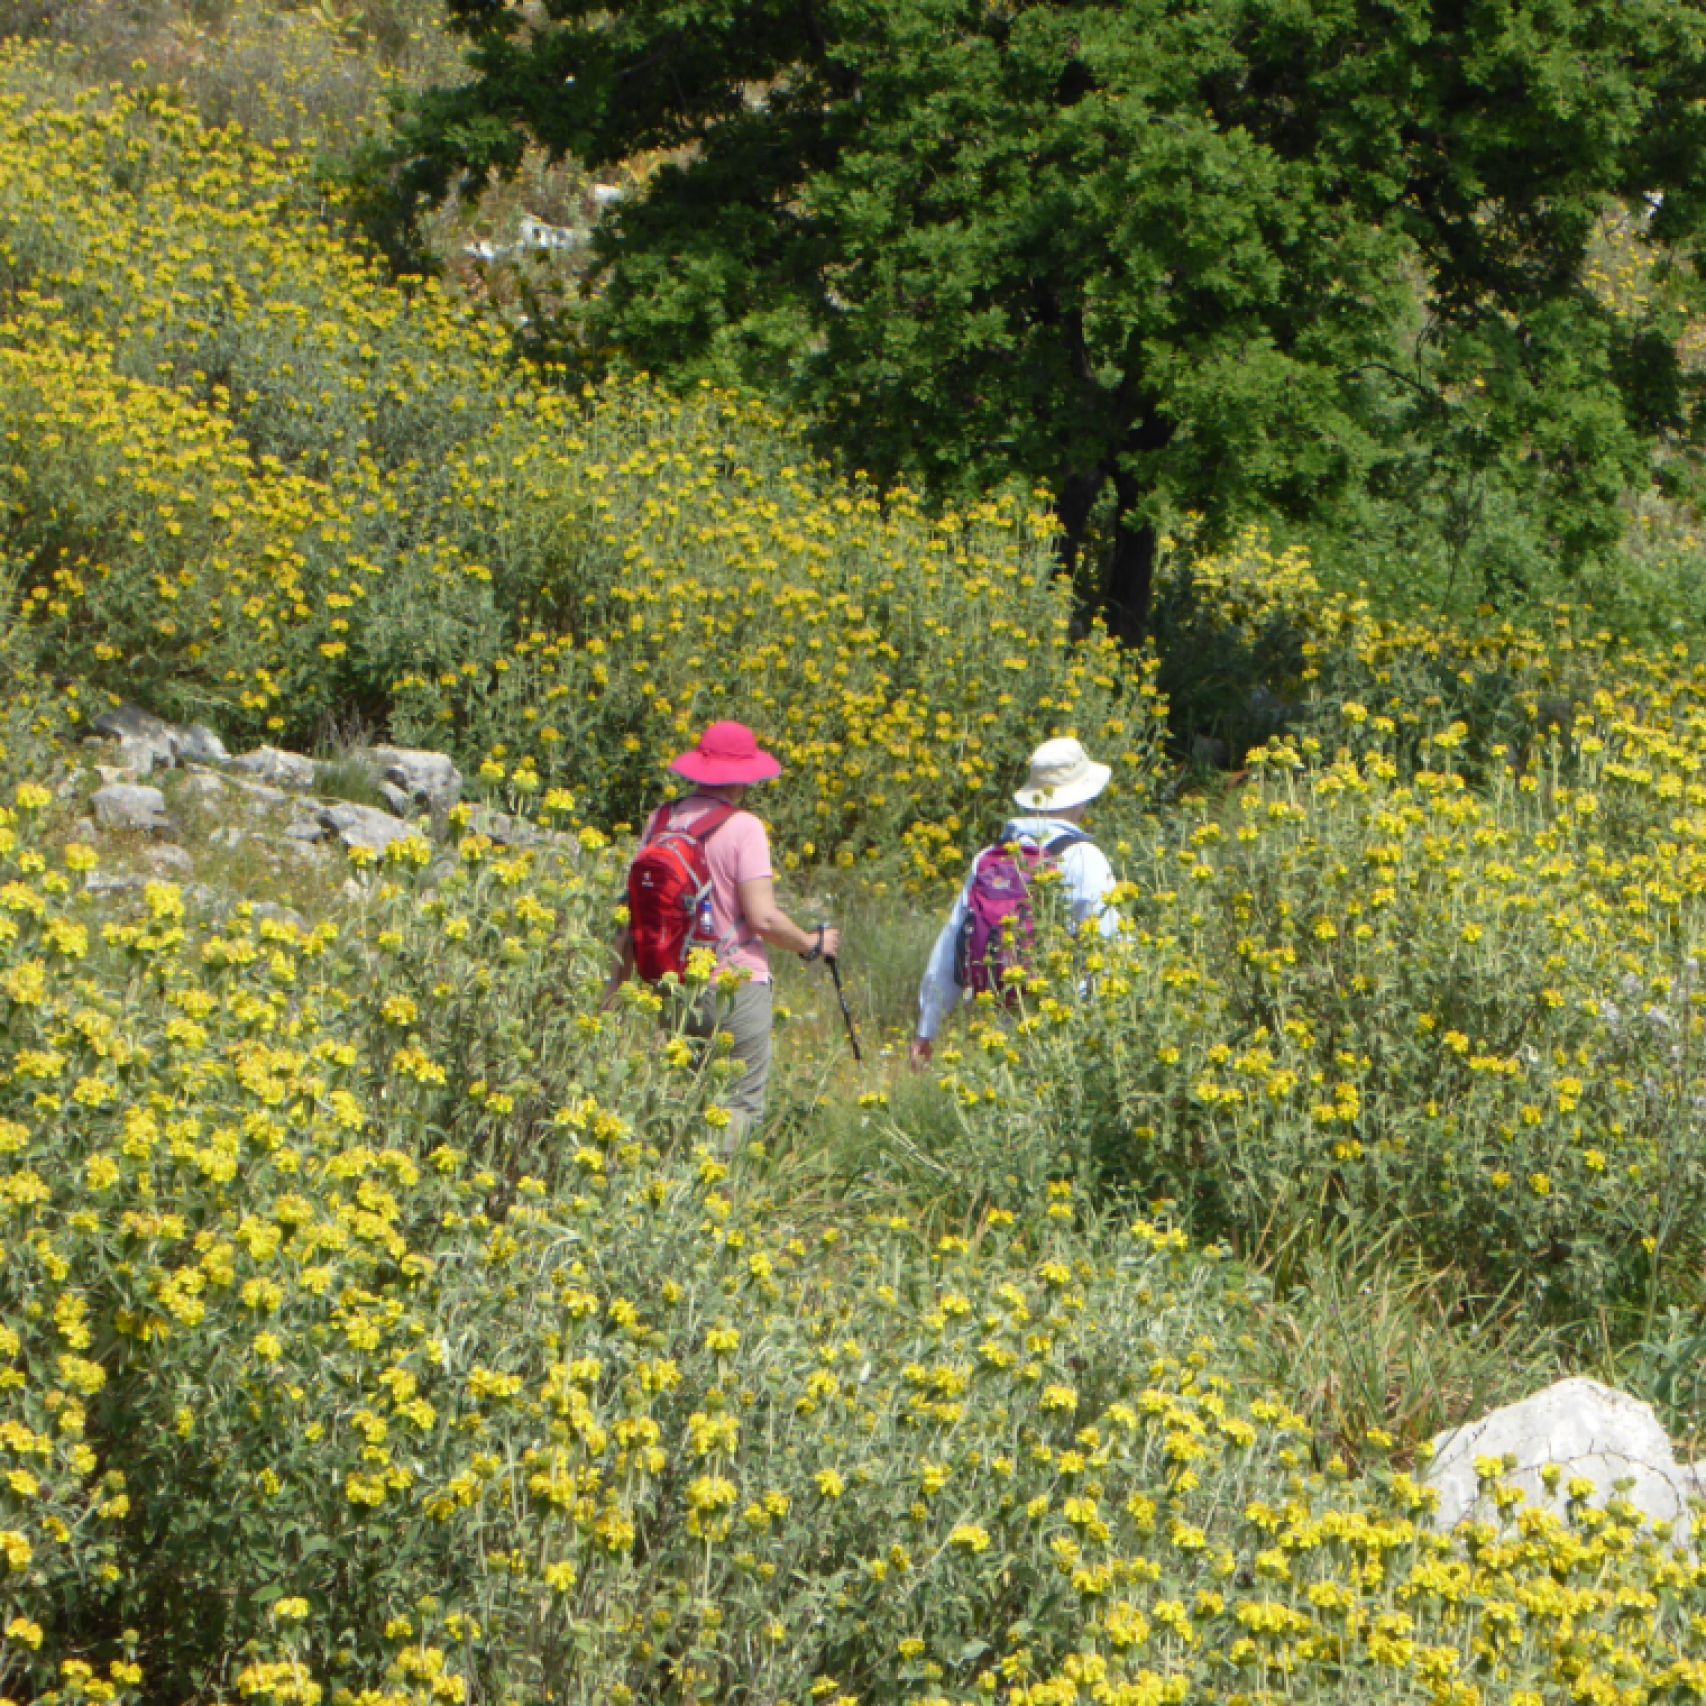 Corfu walkers